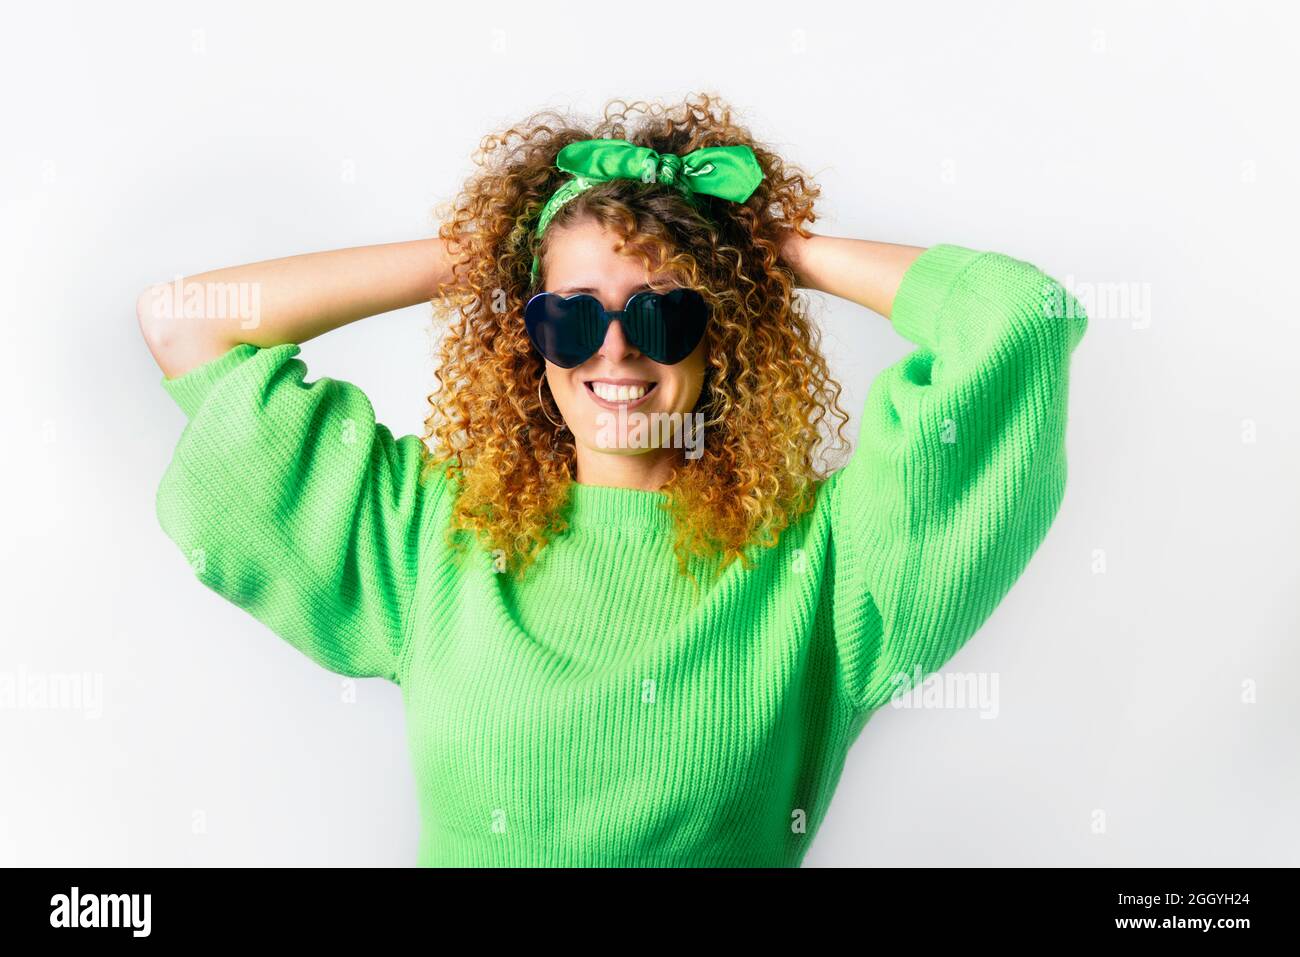 Porträt einer glücklichen lächelnden Frau in einem leuchtend grünen  Pullover und herzförmiger Sonnenbrille auf weißem Hintergrund. Liebe,  Gefühle ausdrücken, positive Gesichtsbehandlung Stockfotografie - Alamy